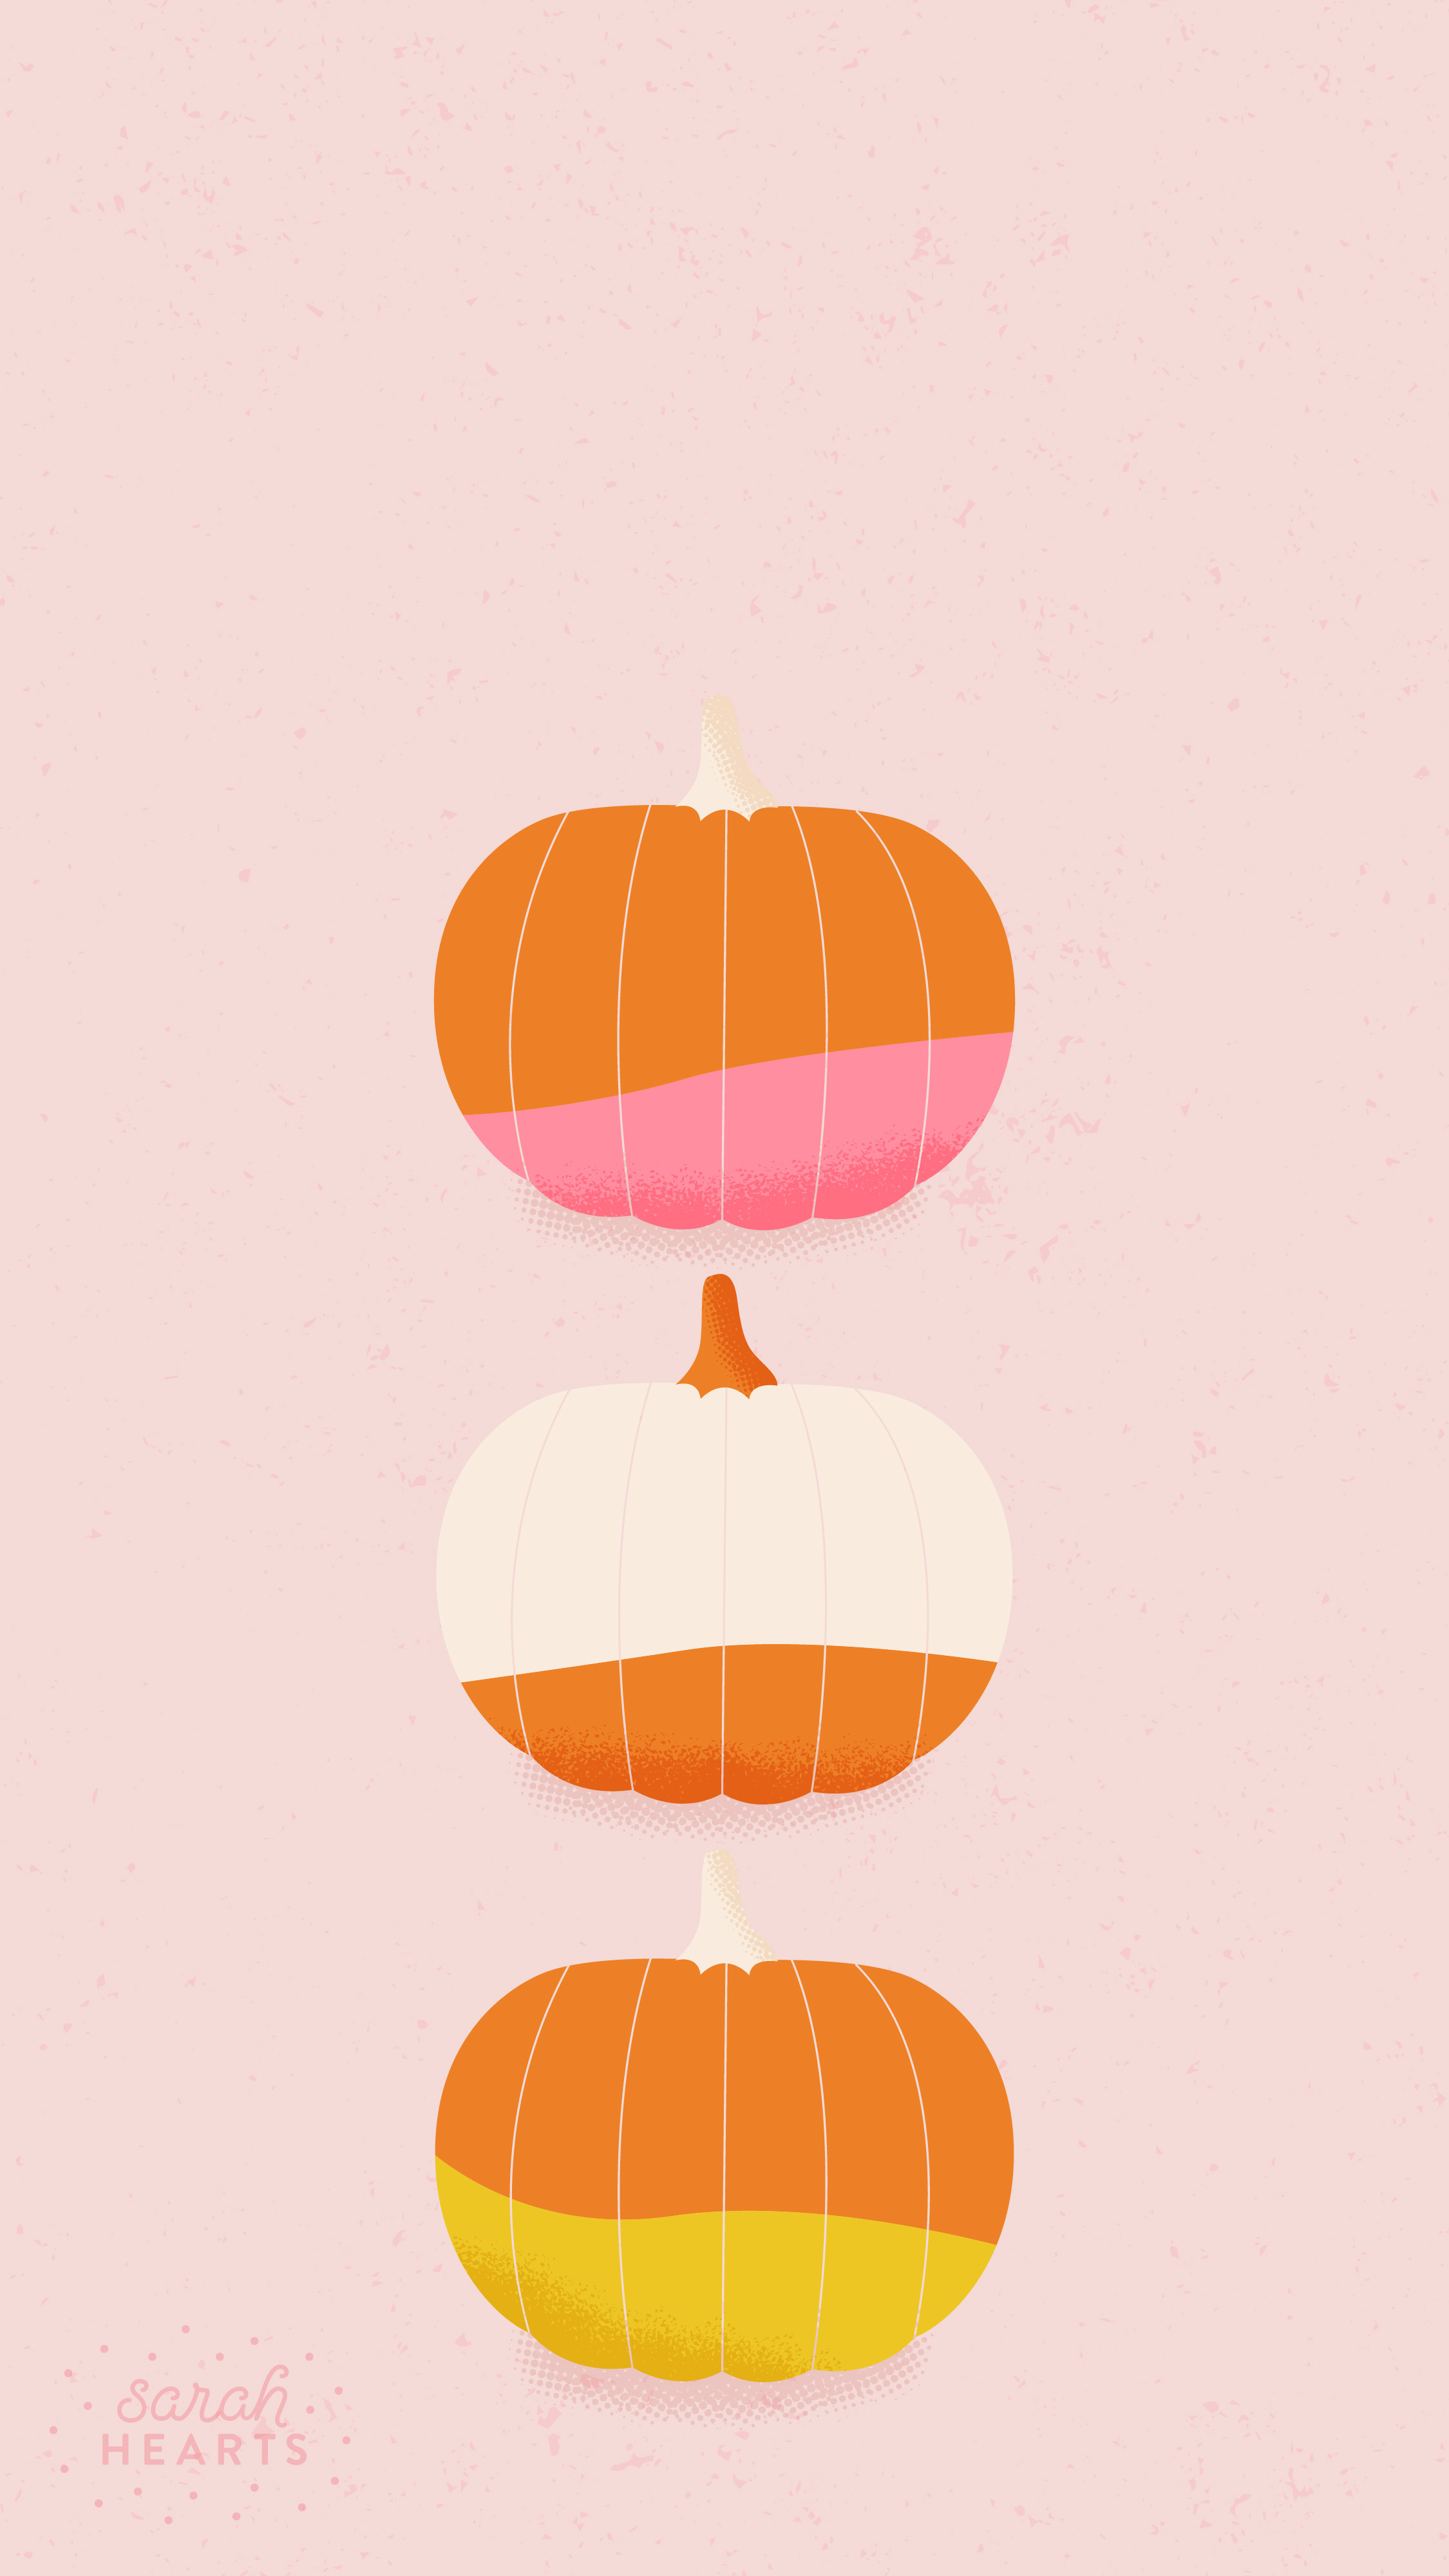 かぼちゃ 秋の季節テーマ Iphoneスマホ用ホーム ロック画面 壁紙画像 シーズン編 Naver まとめ